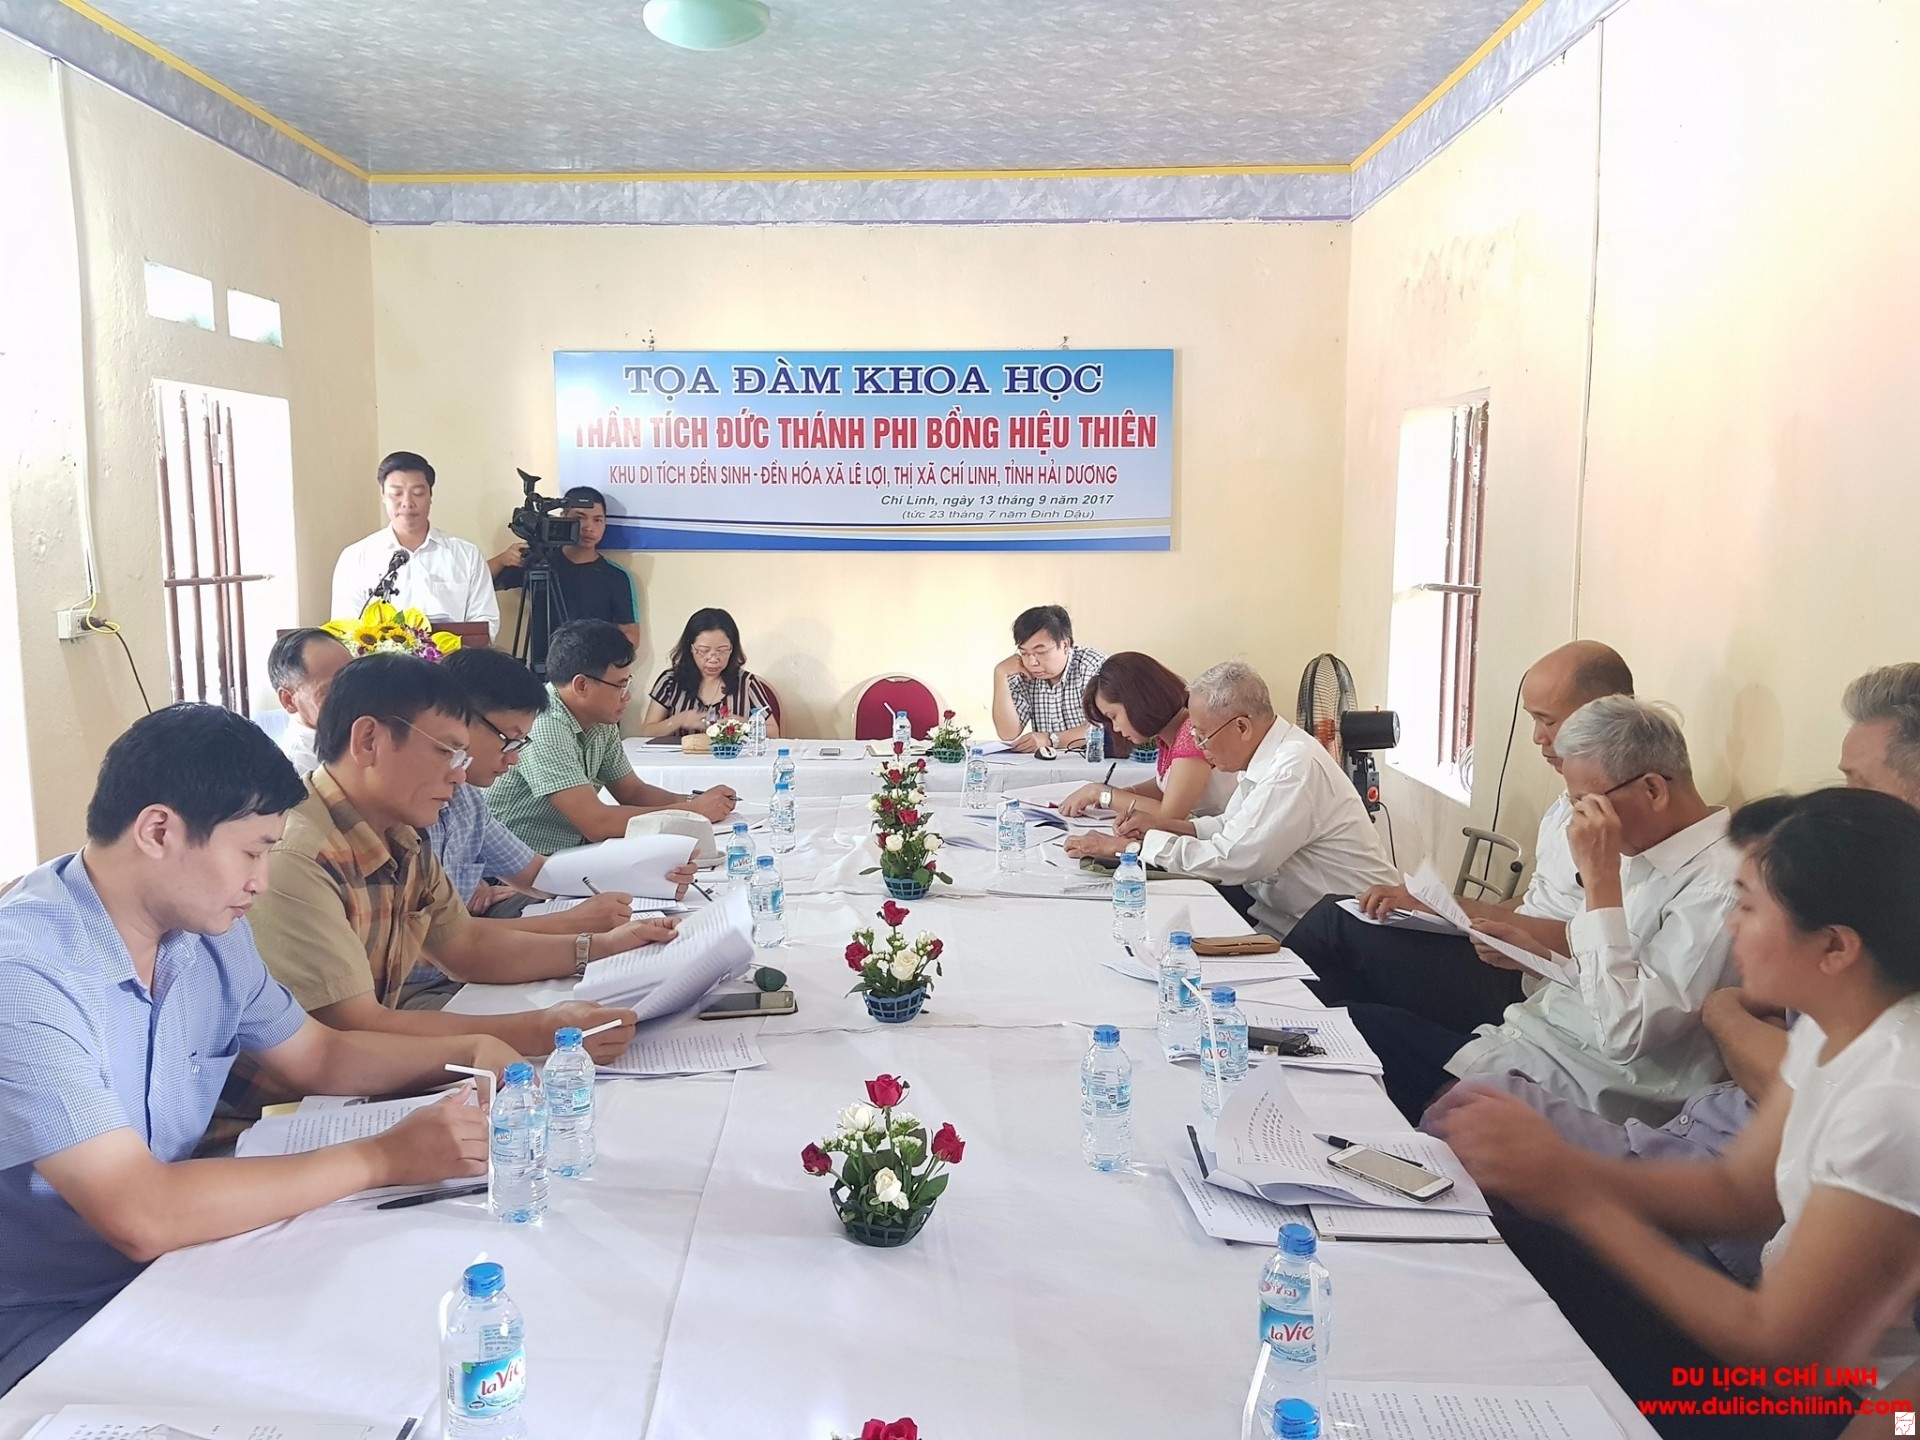 Đ/c Nguyễn Minh Thắng, Thị Uỷ viên- Trưởng Ban QLDT Chí Linh khai mạc buổi tọa đàm khoa học.